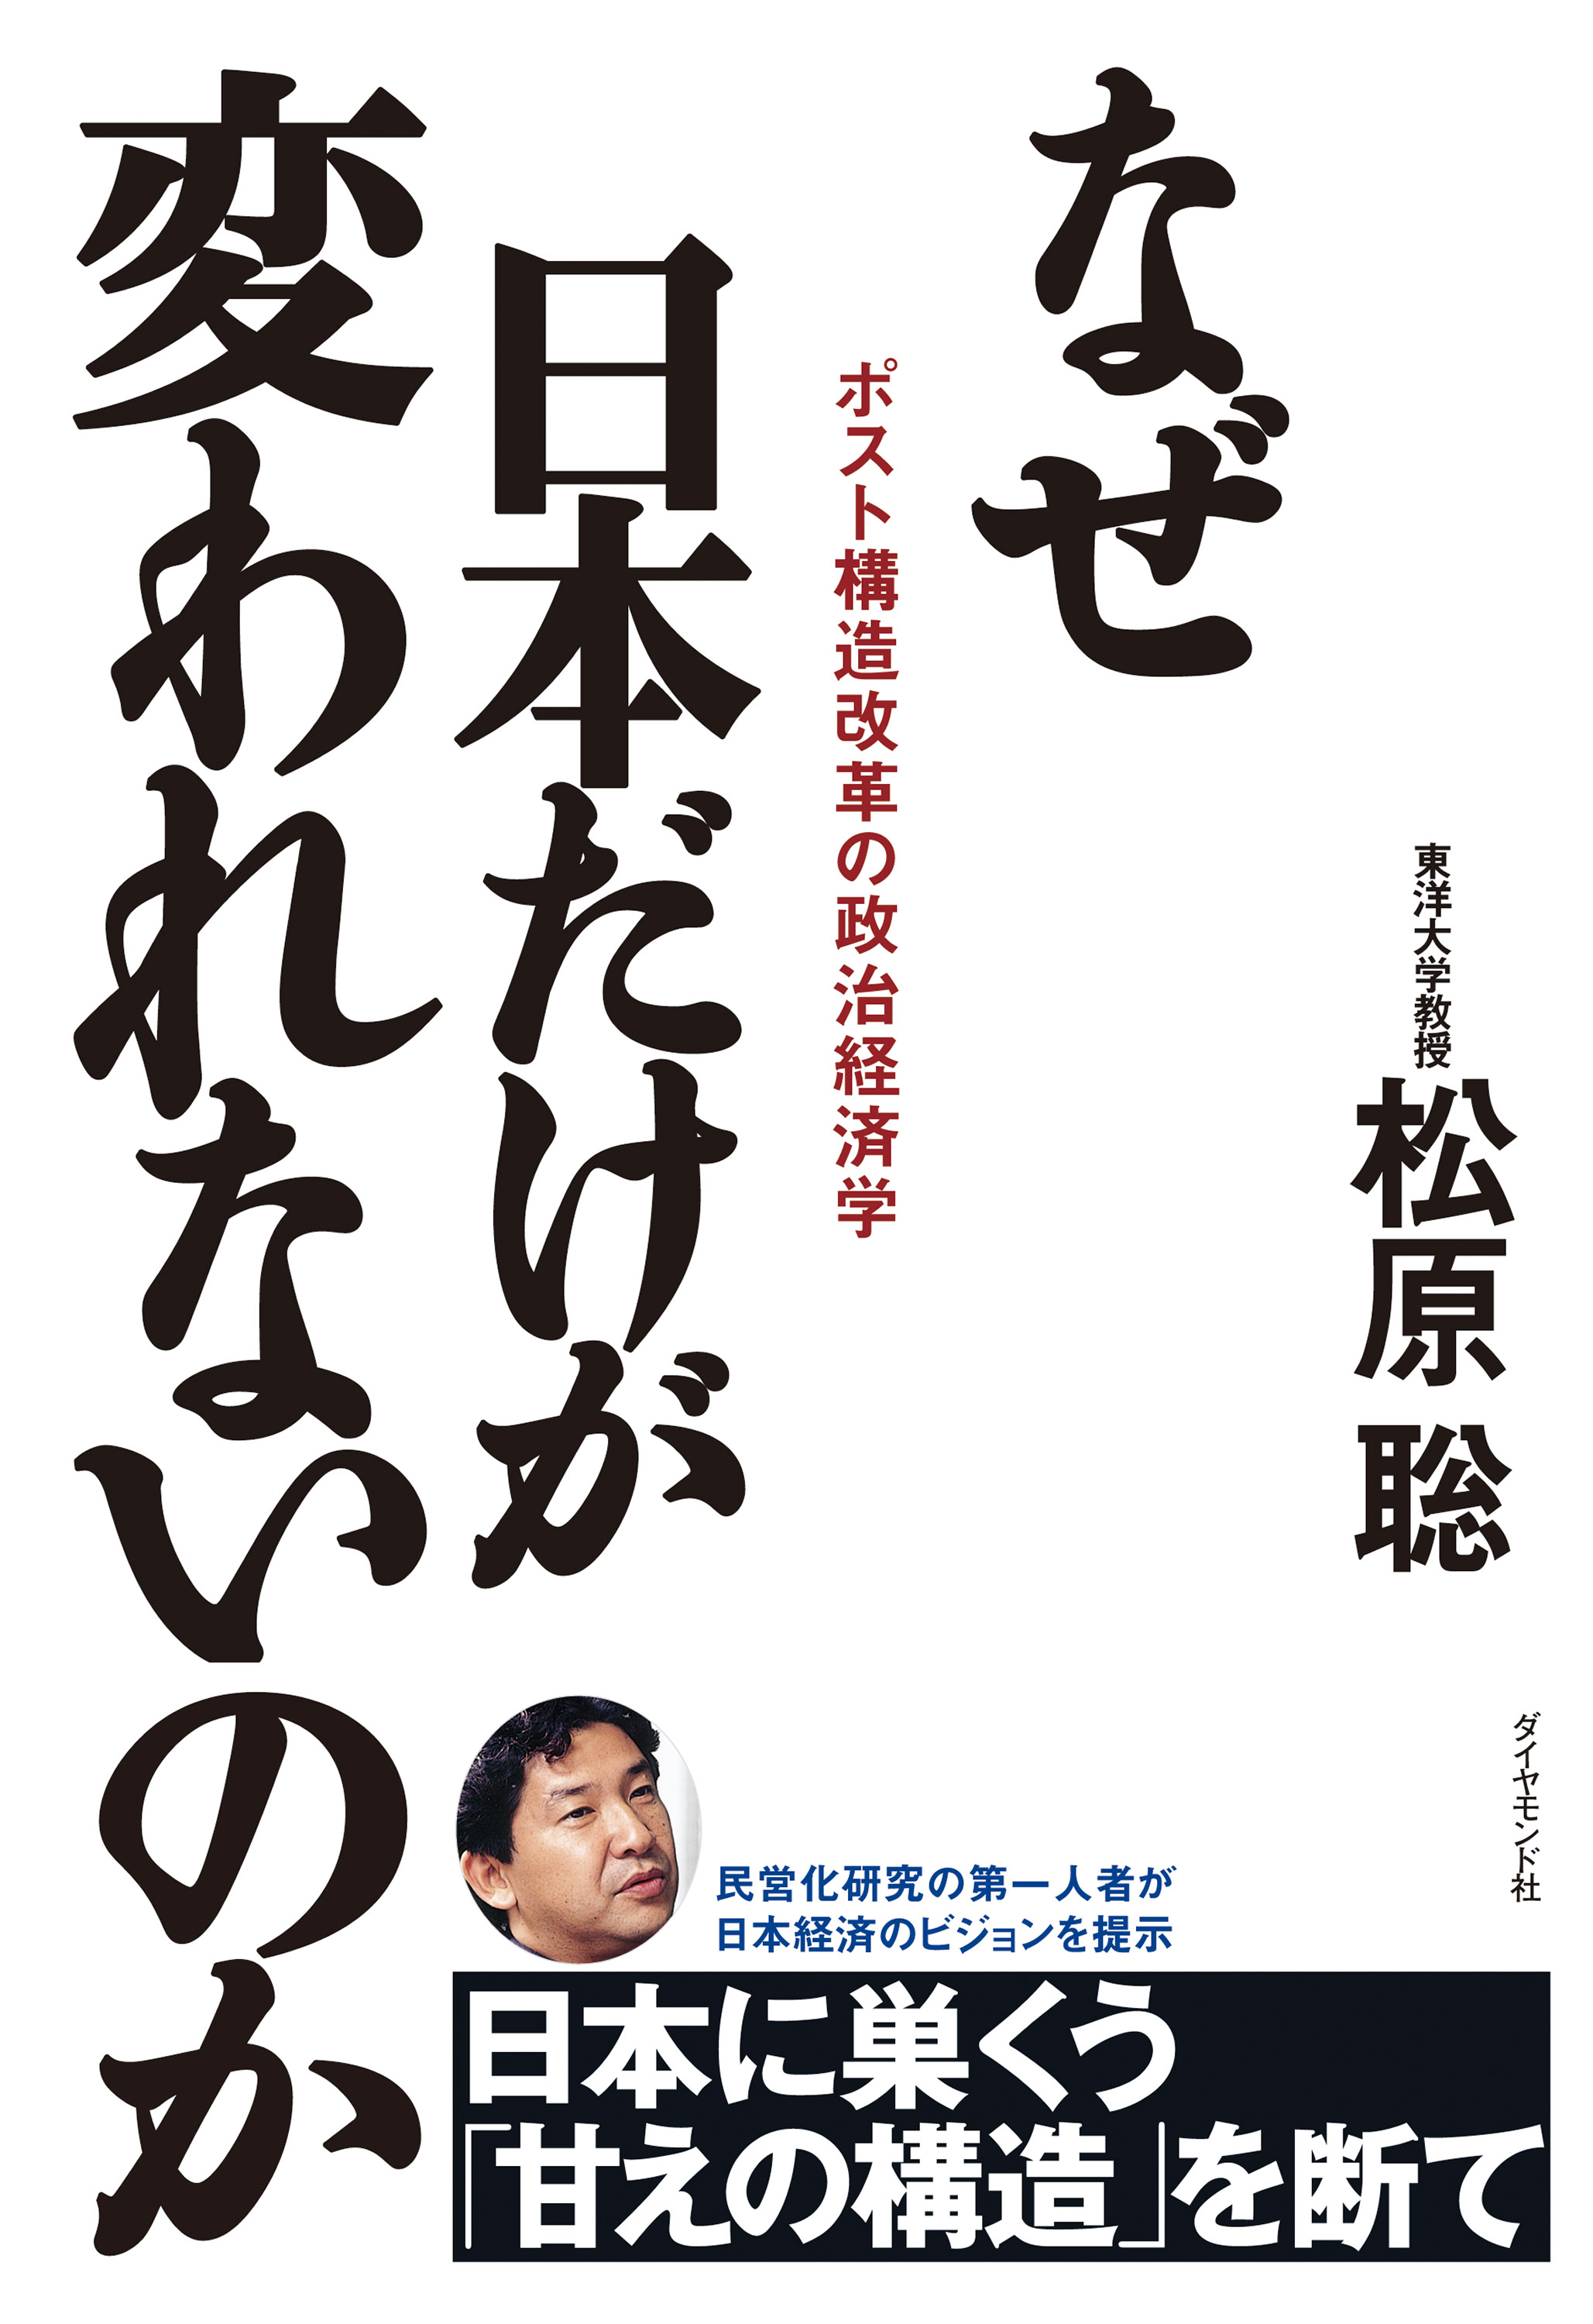 なぜ日本だけが変われないのか―――ポスト構造改革の政治経済学 - 松原聡